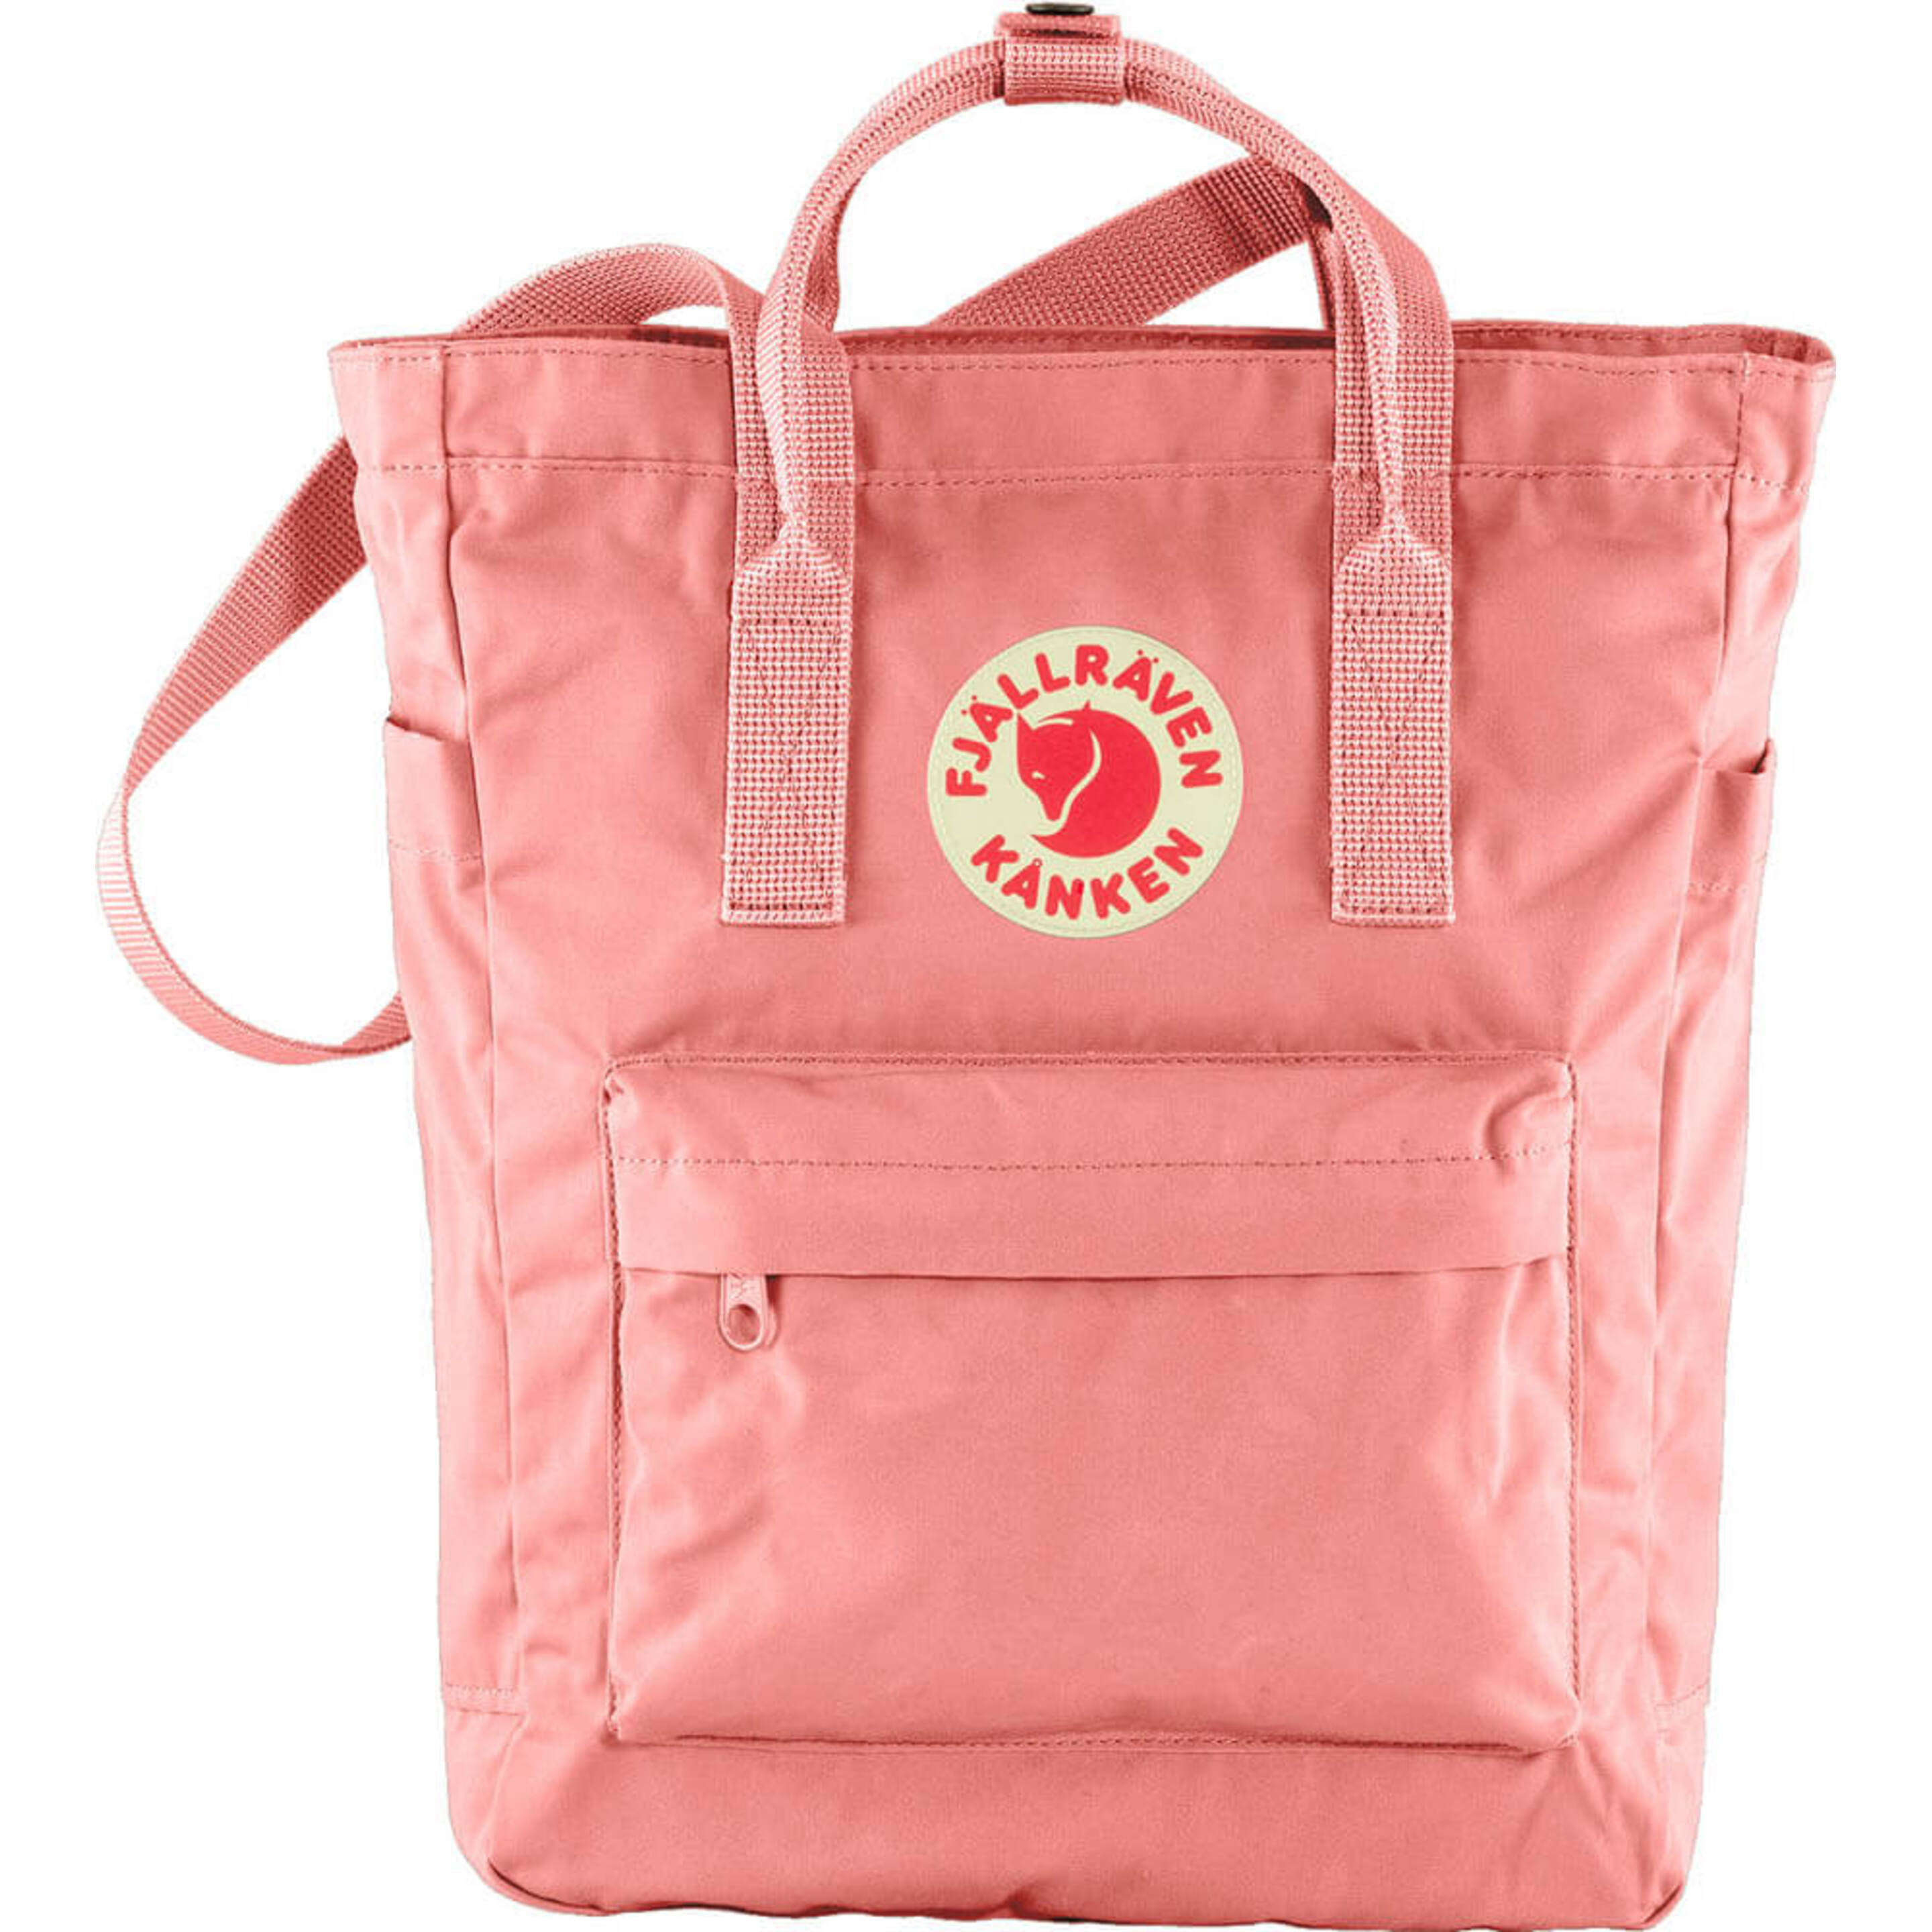 Fjallraven Kånken Totepack Sports Backpack, Unisex-adult, Pink, One Size - rosa-palo - 